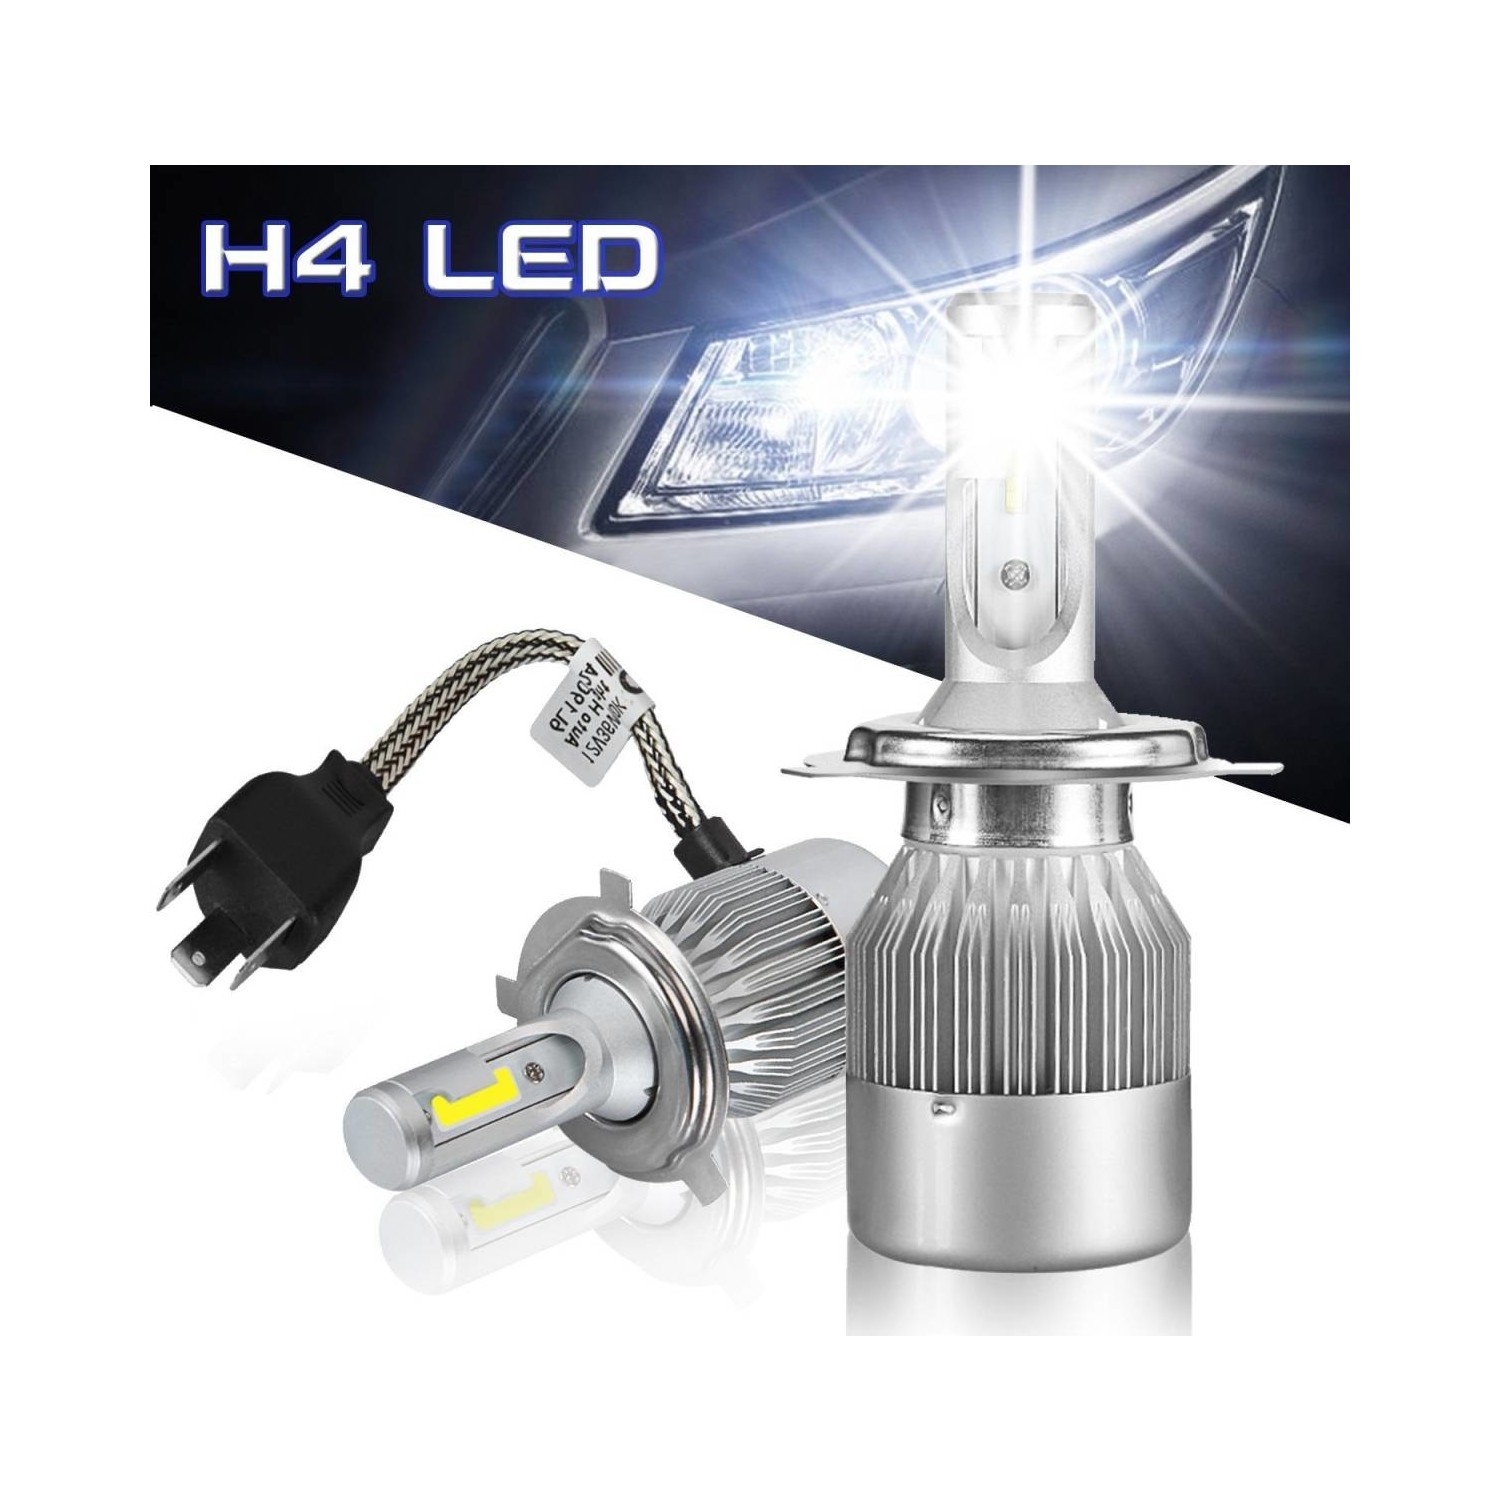 C9 super led Headlight h4. C6 led Headlight h4. C6 led Headlight 36w/3800lm h7. Led Xenon h7.